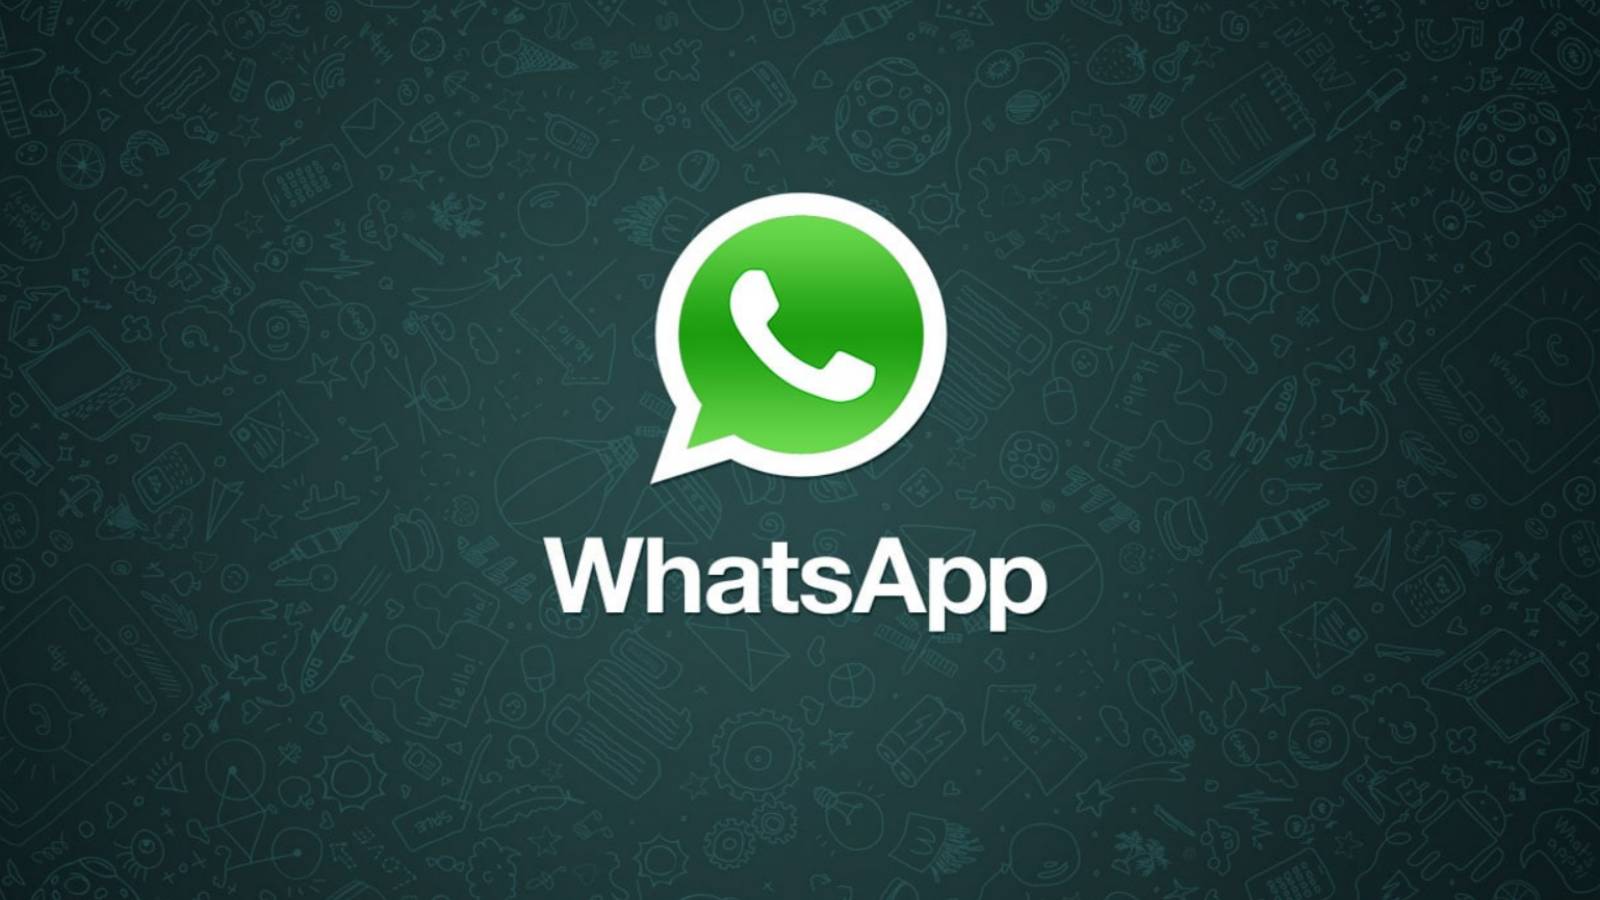 WhatsApp jednocześnie